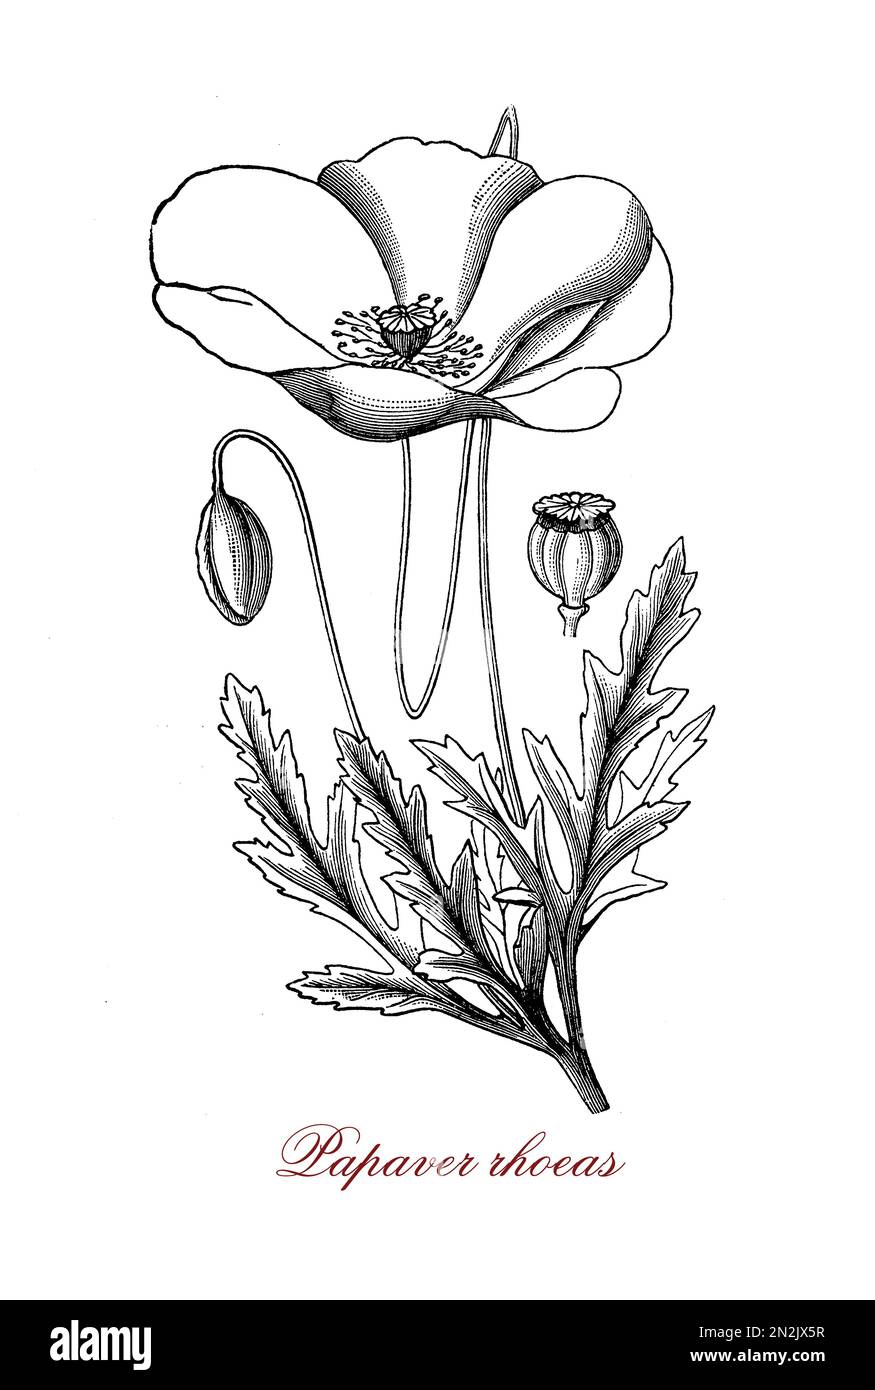 Le papaver rhoeas ou le pavot rouge est une plante de mauvaises herbes avec des fleurs simples, les pétales sont rouge vif, la tige est habituellement couverte de poils grossiers. Le pavot rouge contient un alcaloïde appelé rhoeadine, qui est un sédatif léger. Banque D'Images